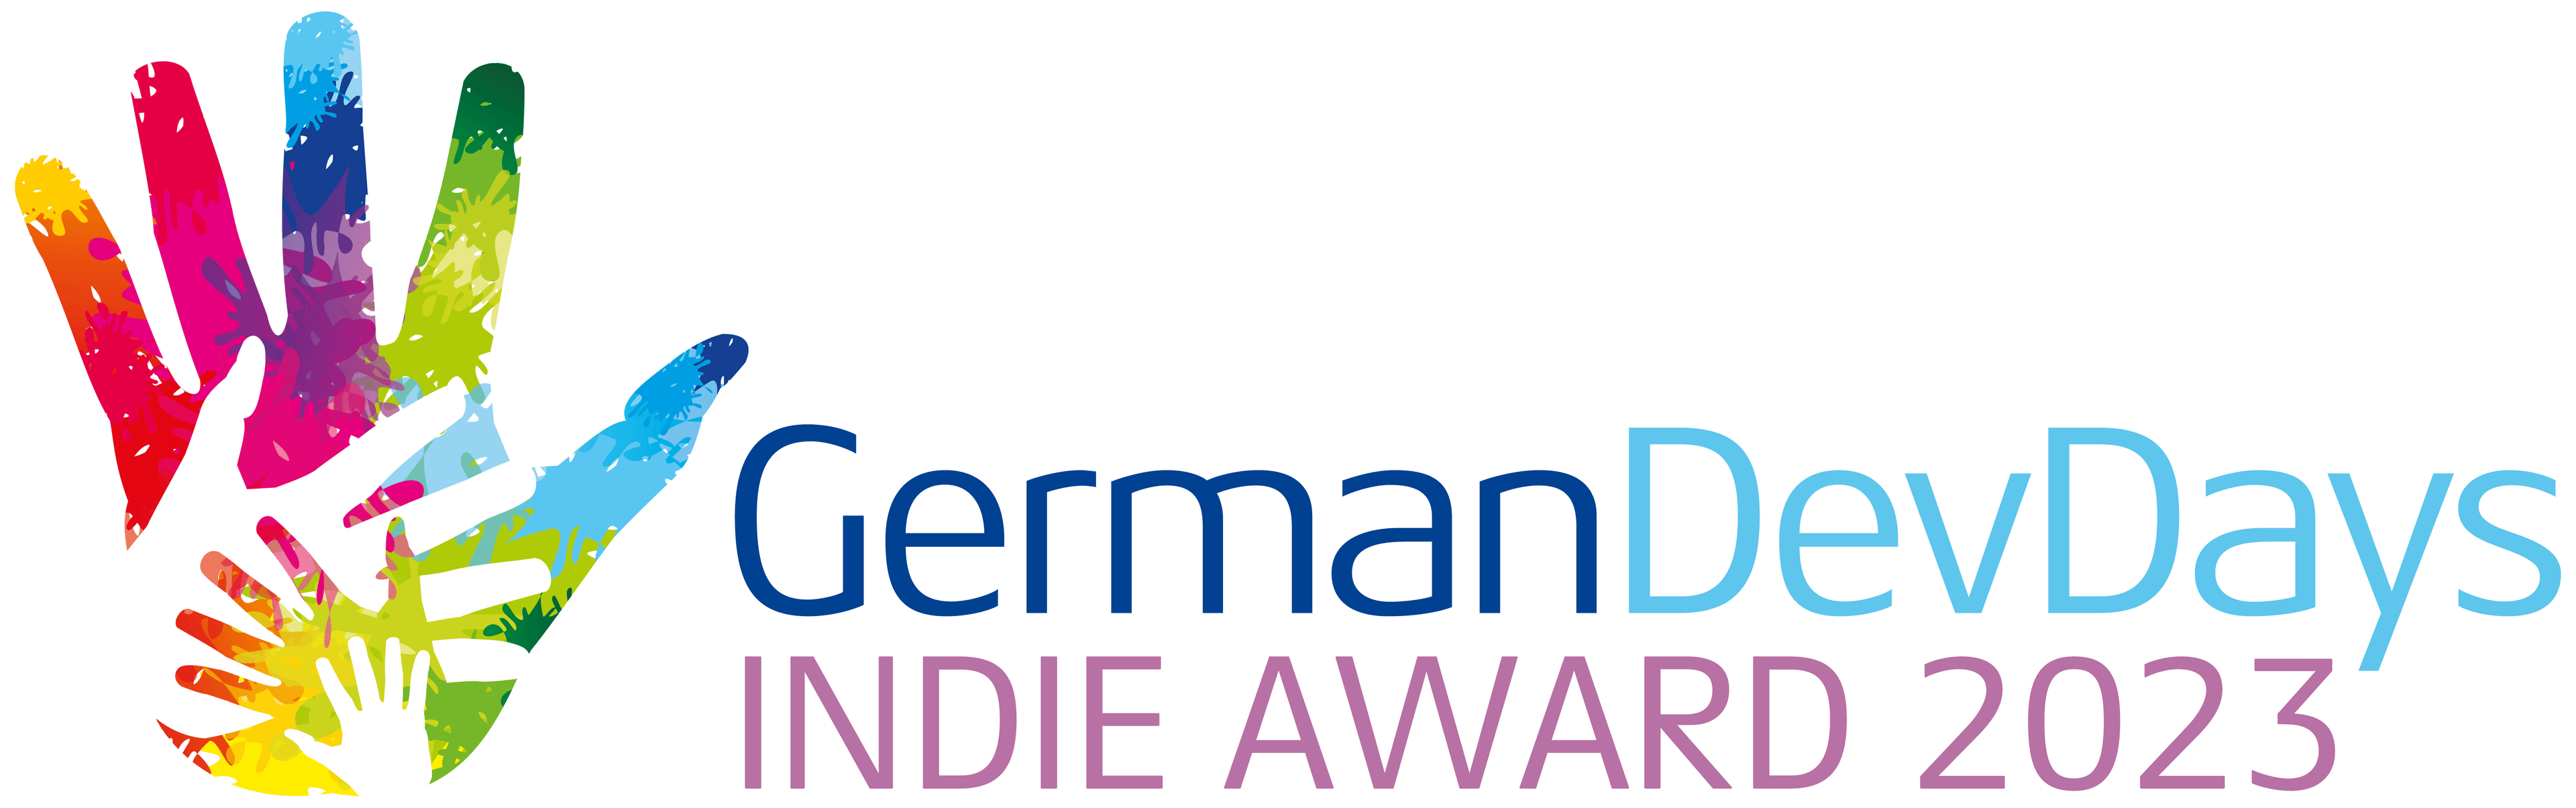 Einreichung für GermanDevDays Award 2023 geöffnet